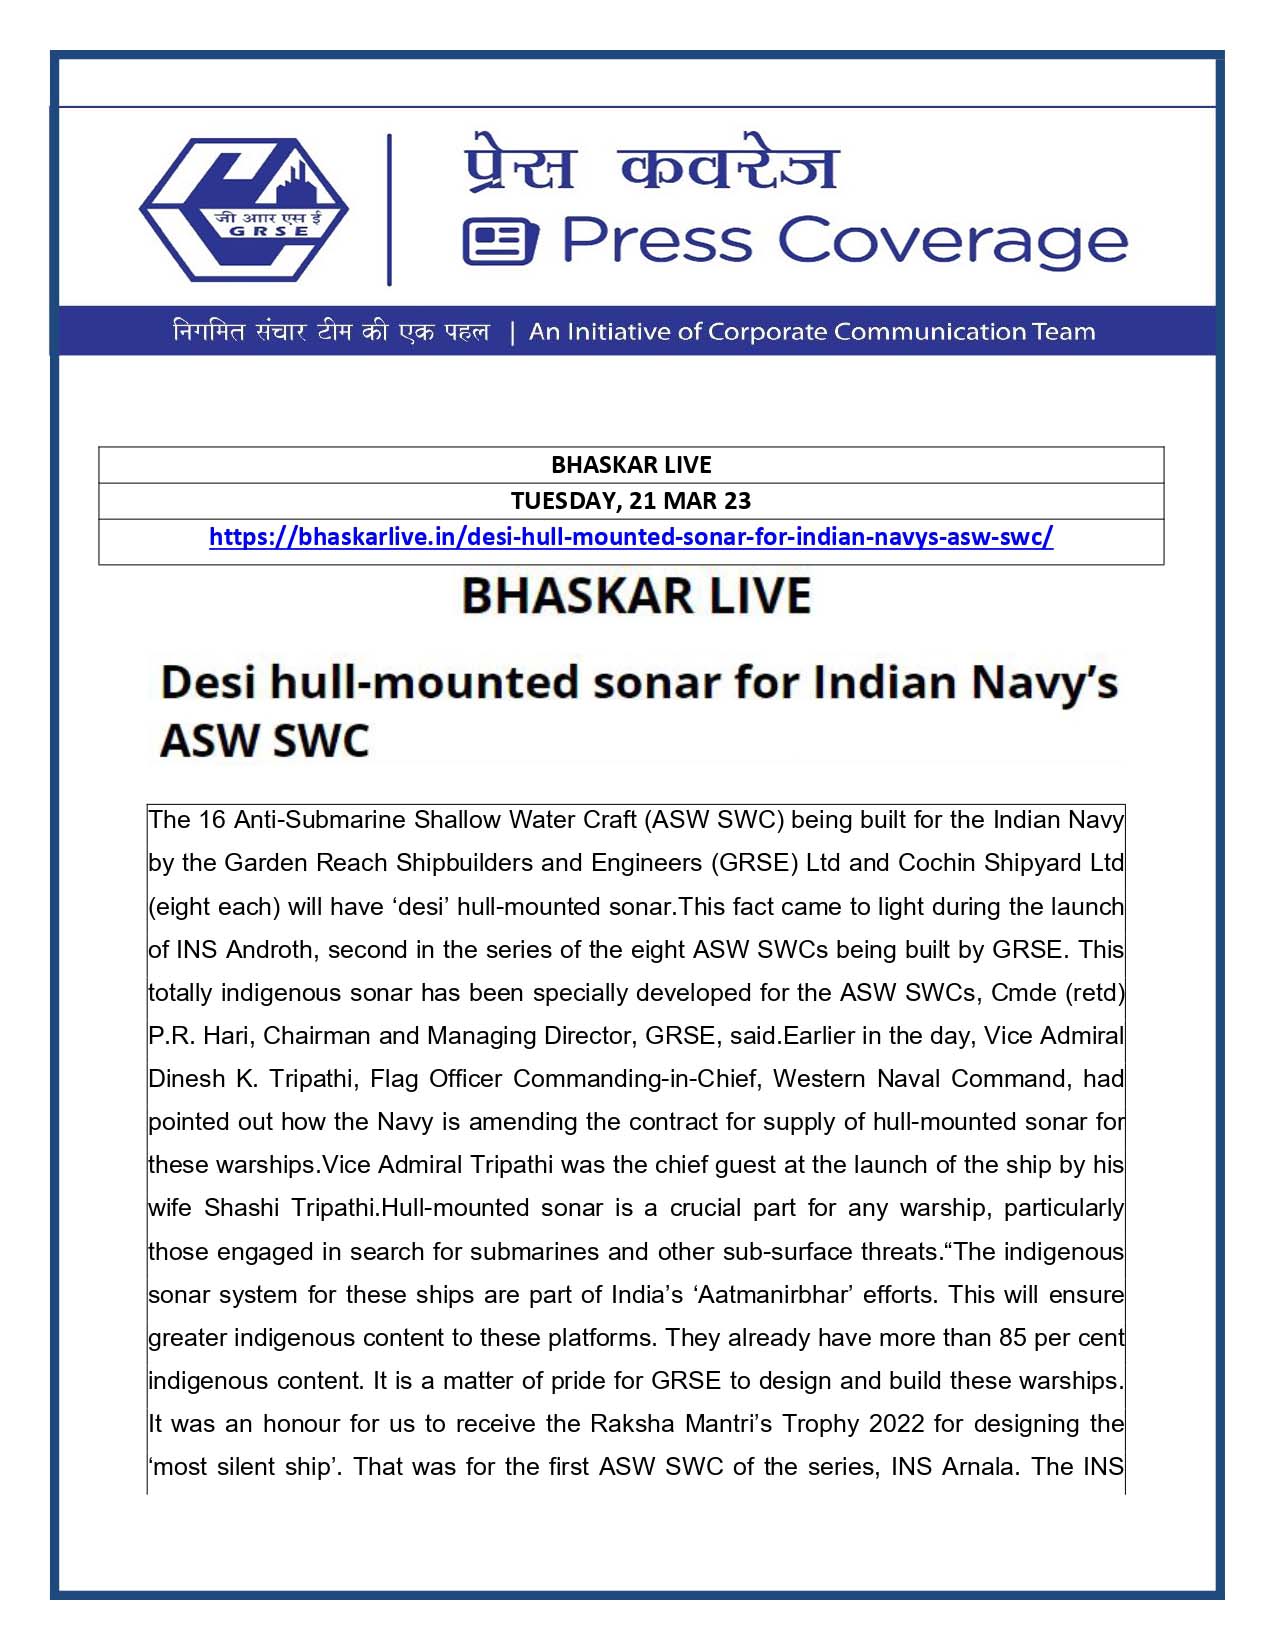 Bhaskar Live 21 Mar 23